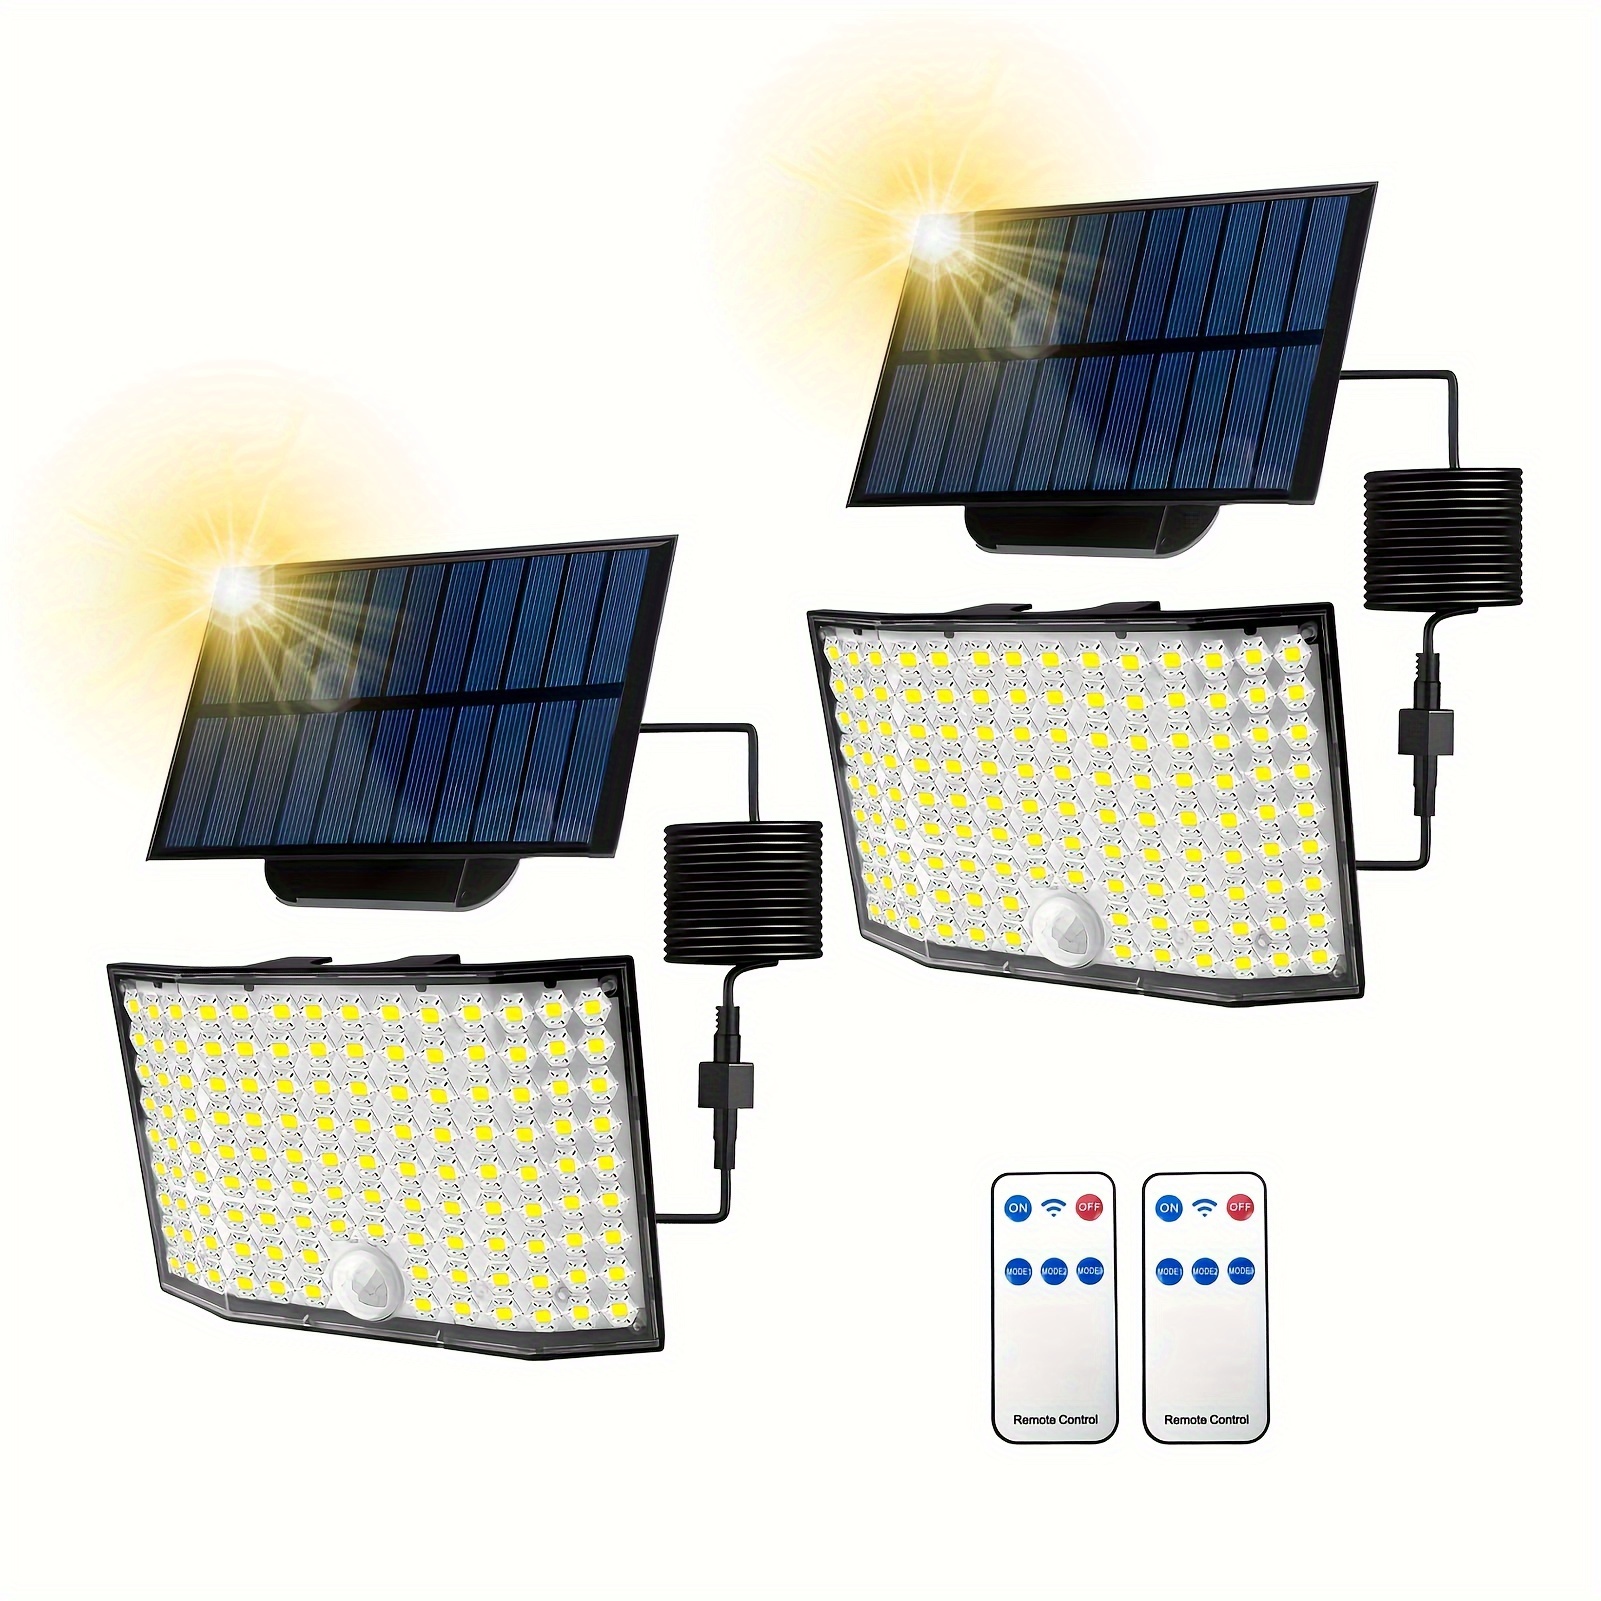 1/2 Paket 122LED Açık Hava Bölünmüş Güneş Işıkları, 16.4FT (5M) Kablo, Hareket Sensörlü Güneş Sel Lambası Uzaktan Kumandalı Su Geçirmez Güvenlik Işığı Süper Alacakaranlık Güneş Aydınlatması Açık Hava Veranda Garaj için